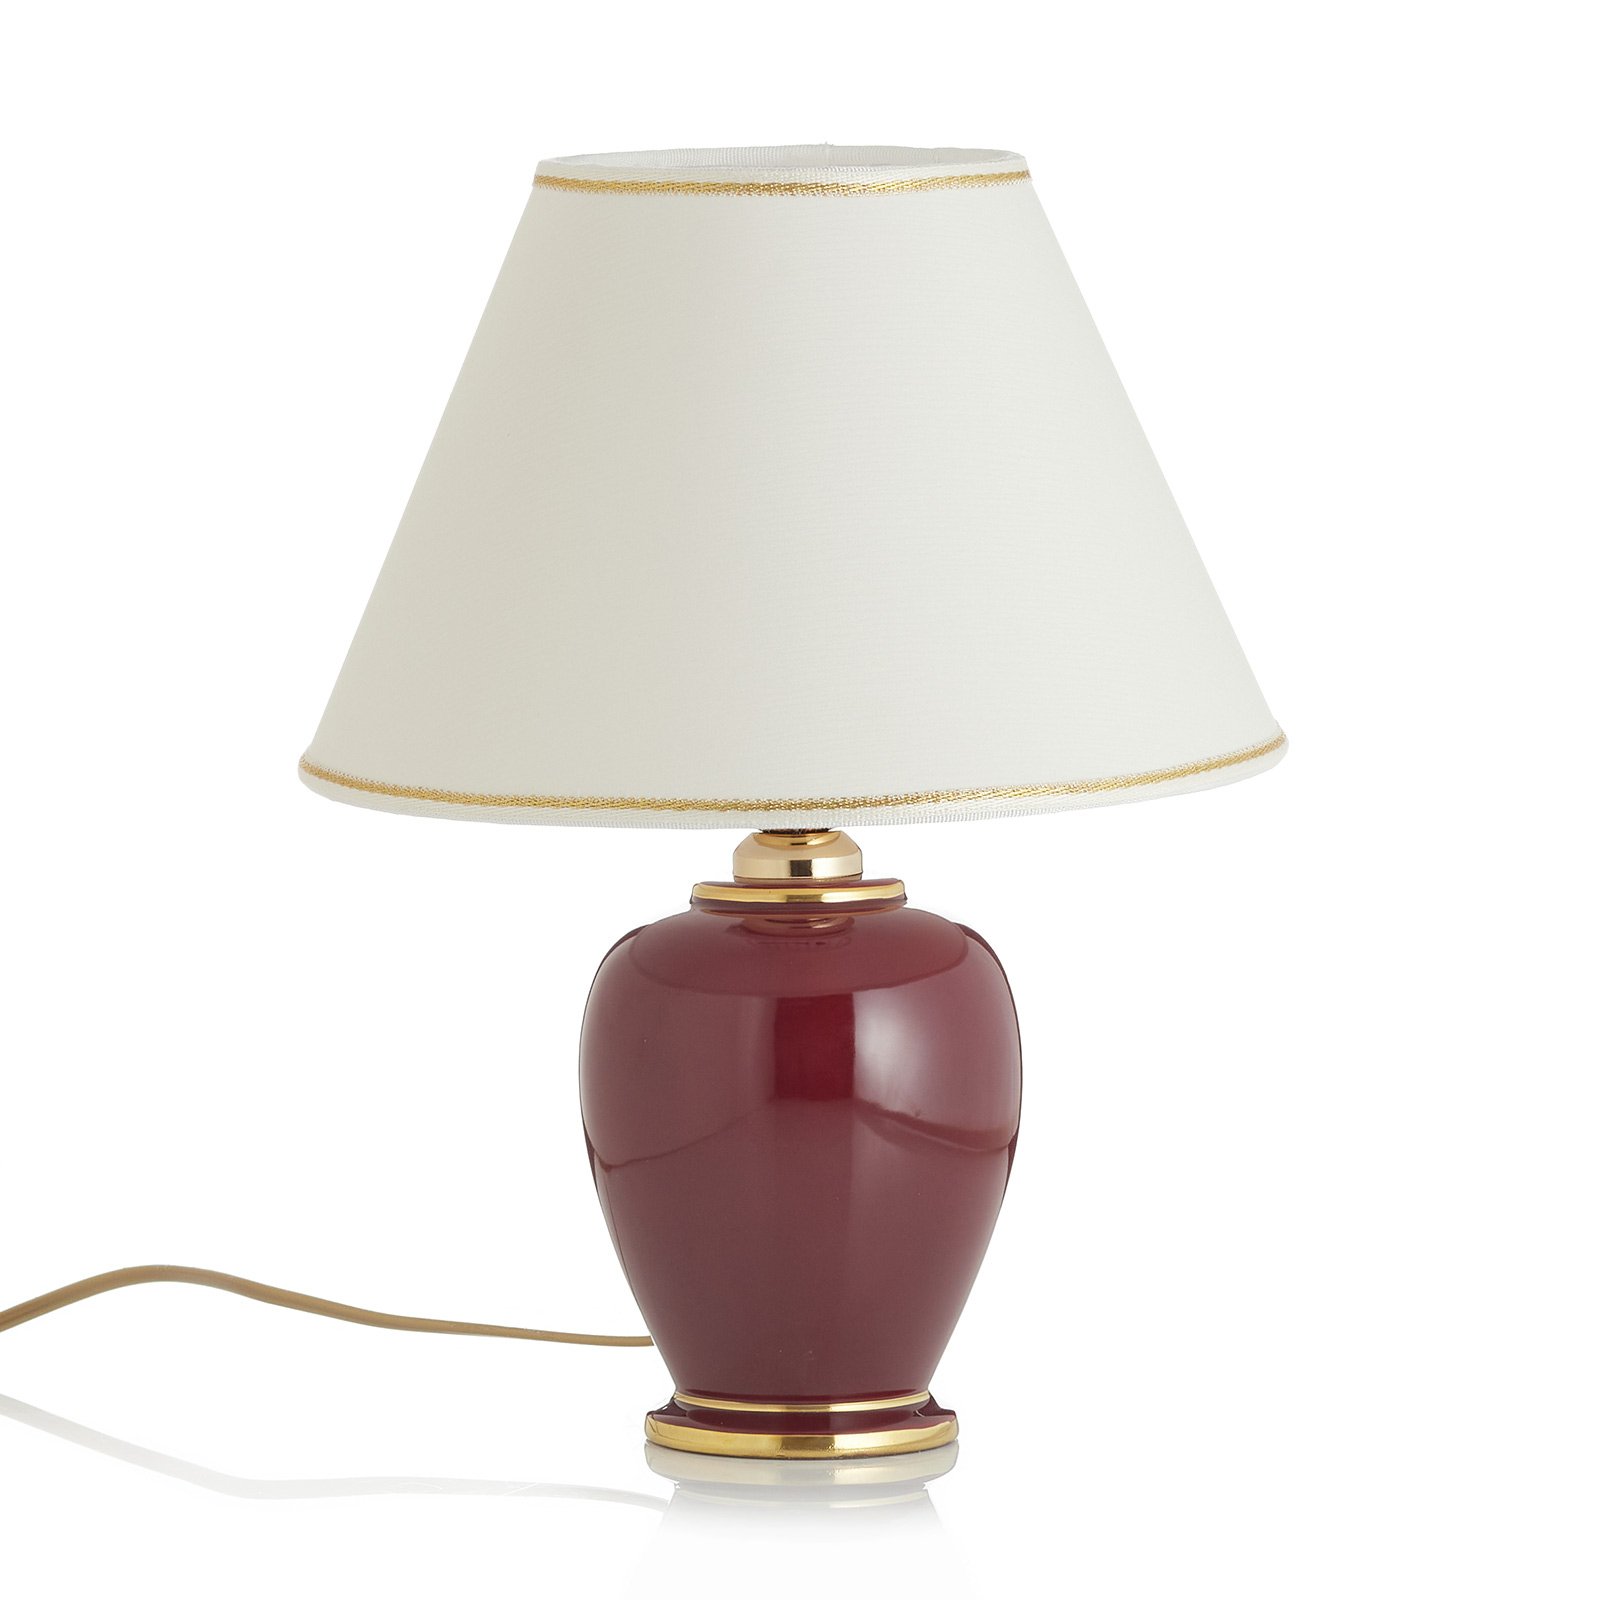 Charming table lamp Bordeaux H: 34 cm/ D: 25 cm